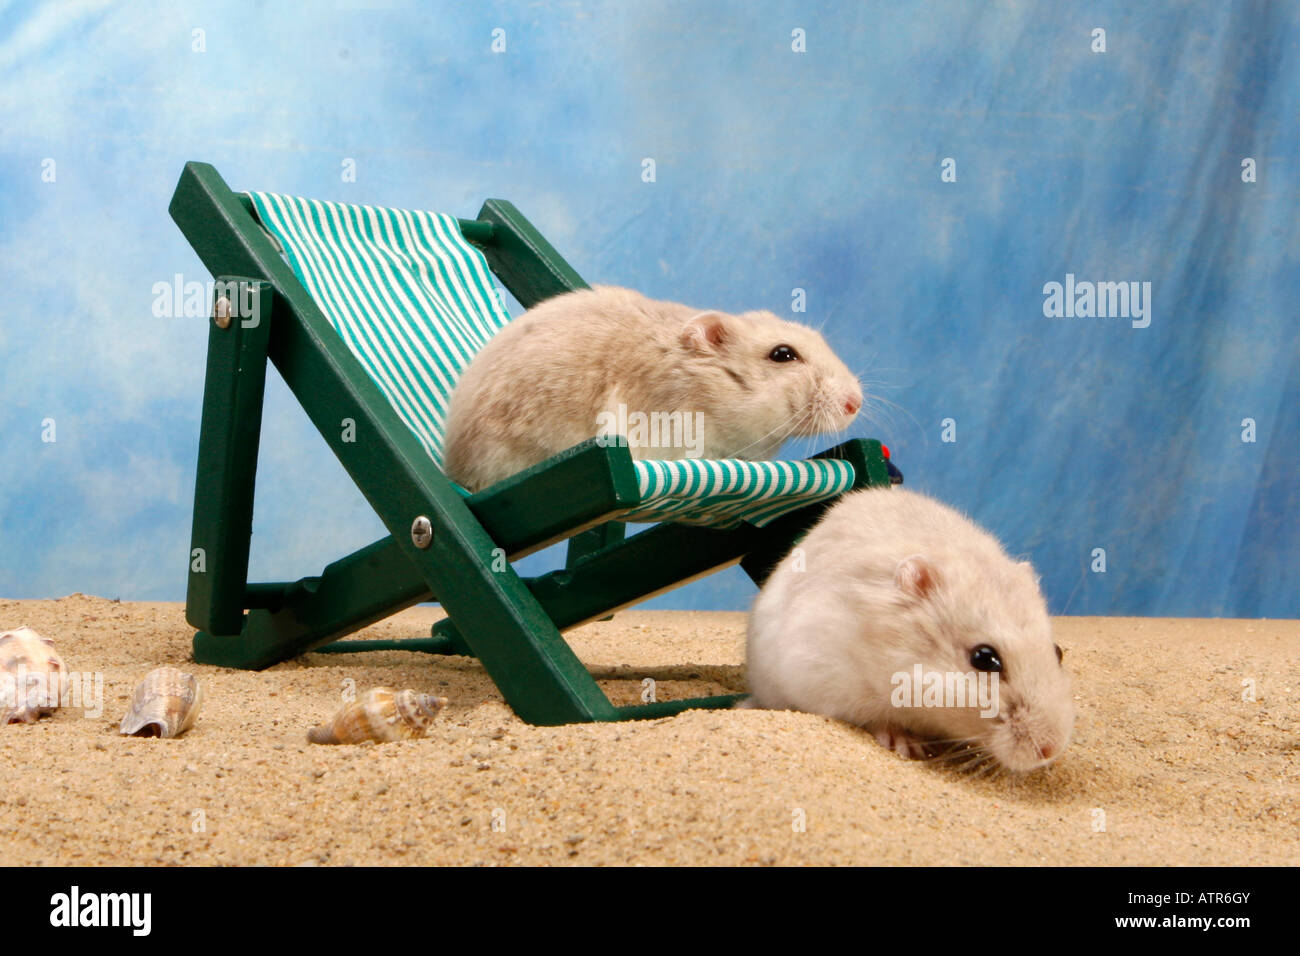 Roborovski Hamster Stock Photo